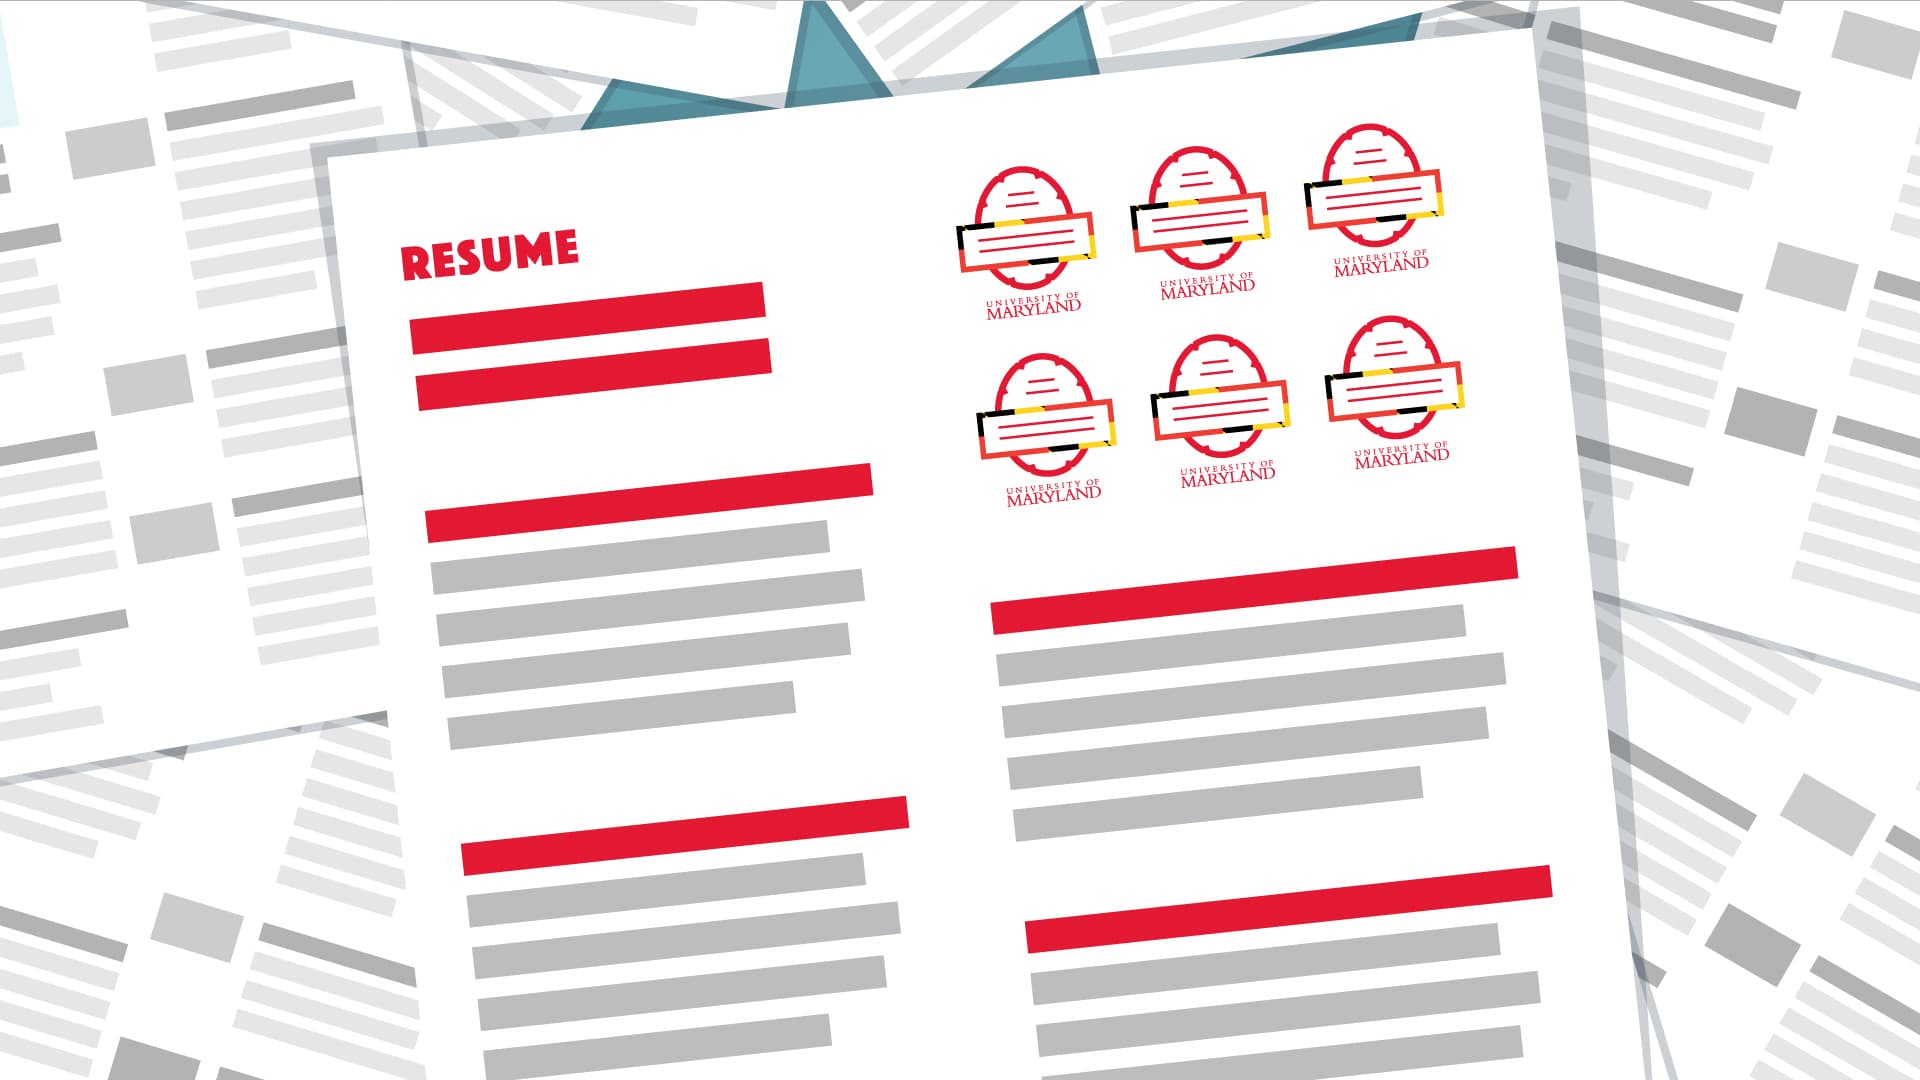 Resume illustration with digital badges